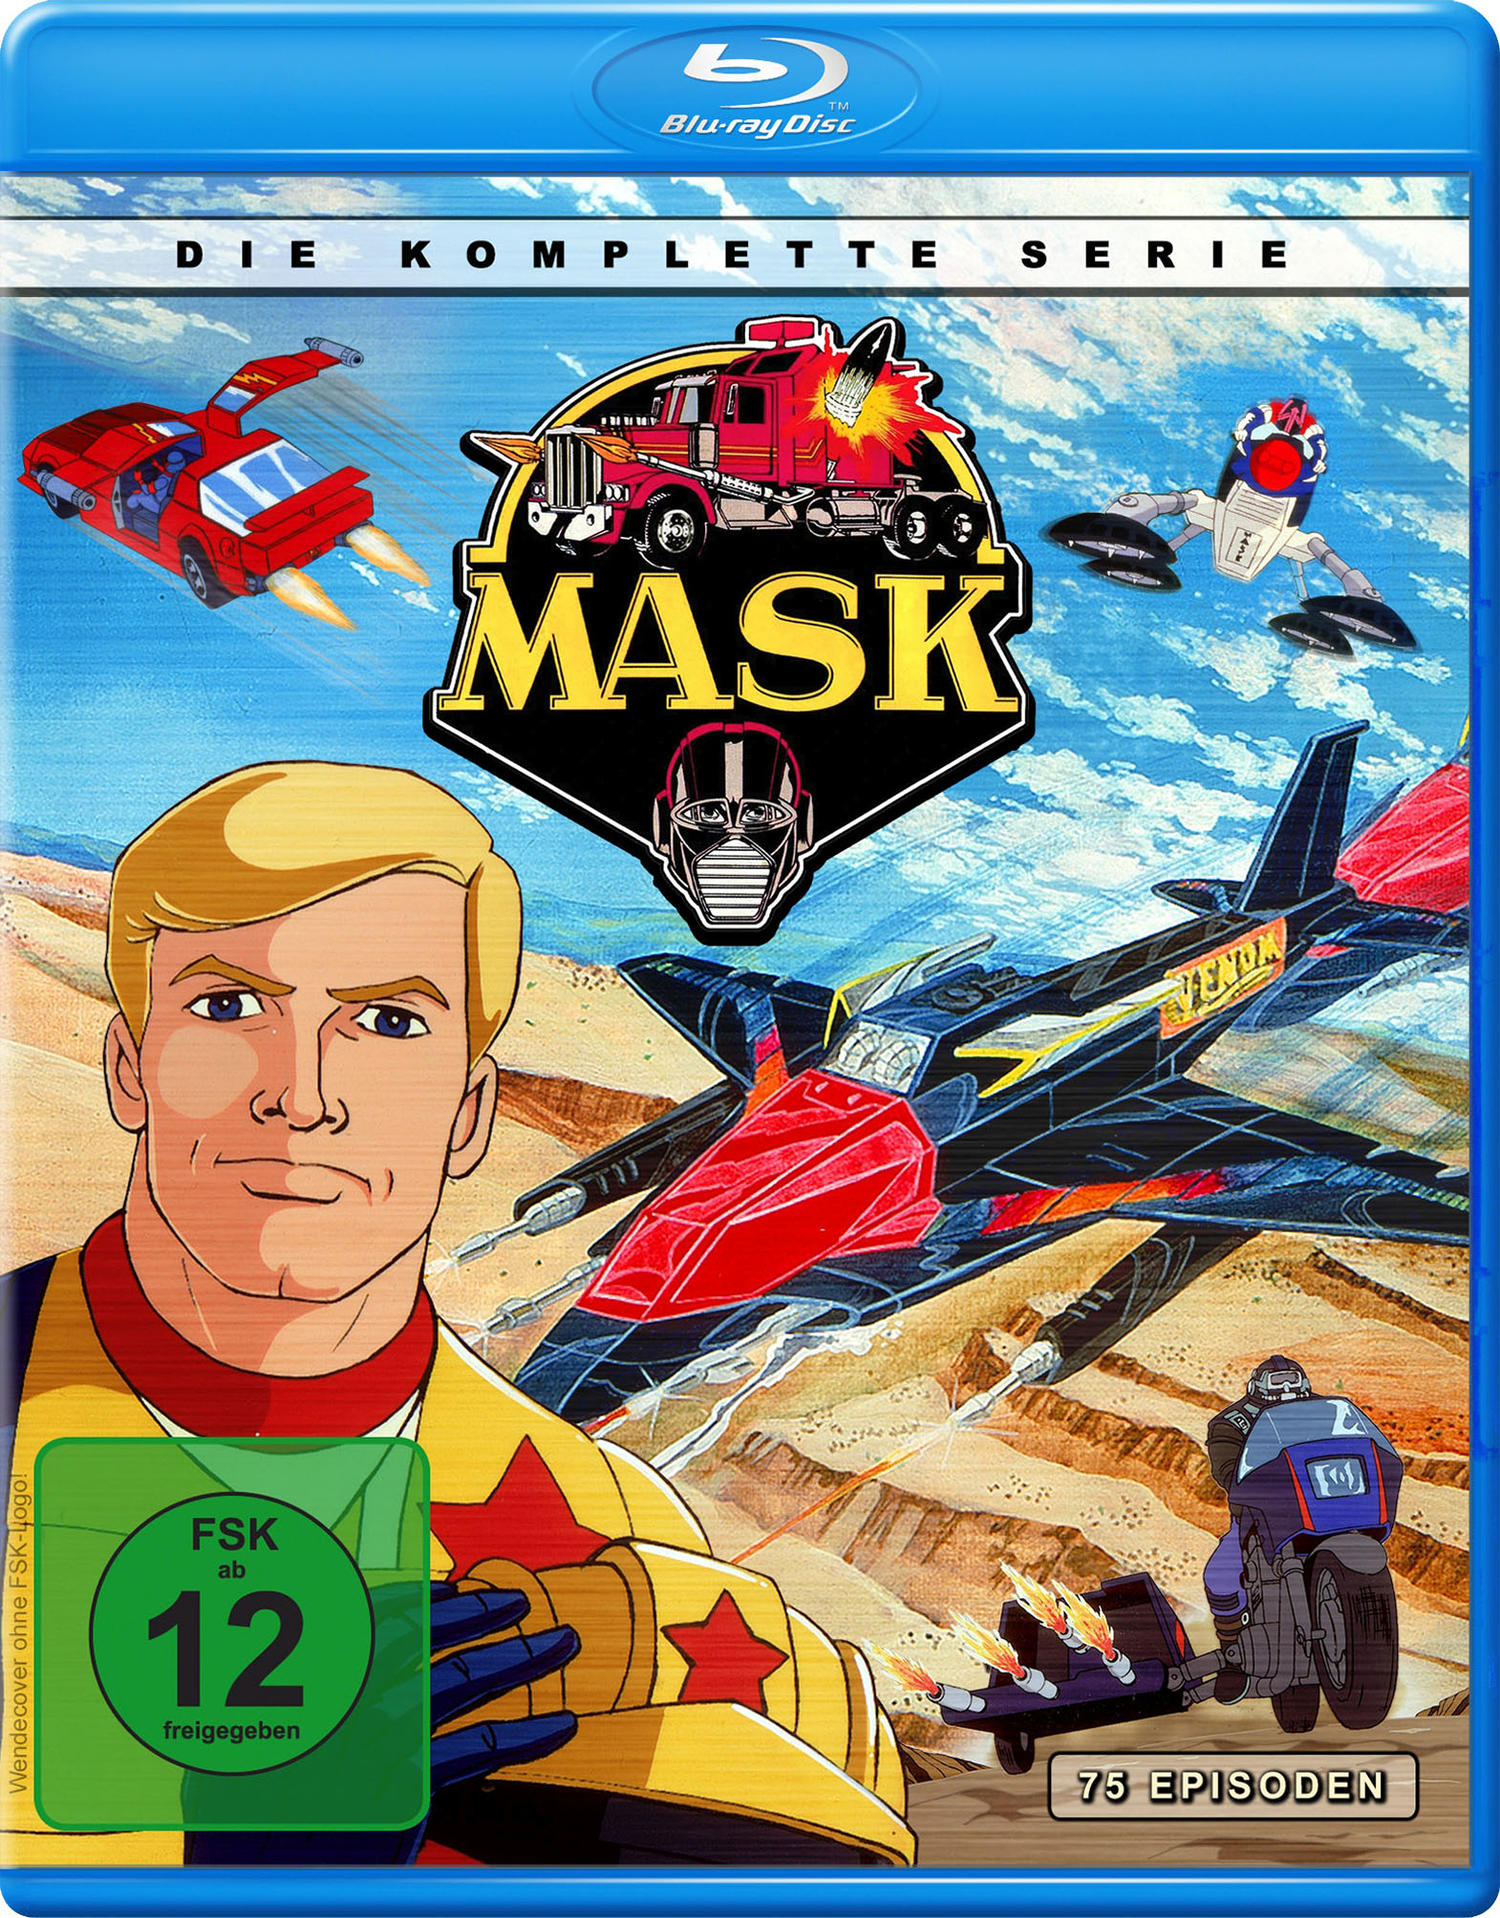 Die komplette - M.A.S.K. Serie Blu-ray